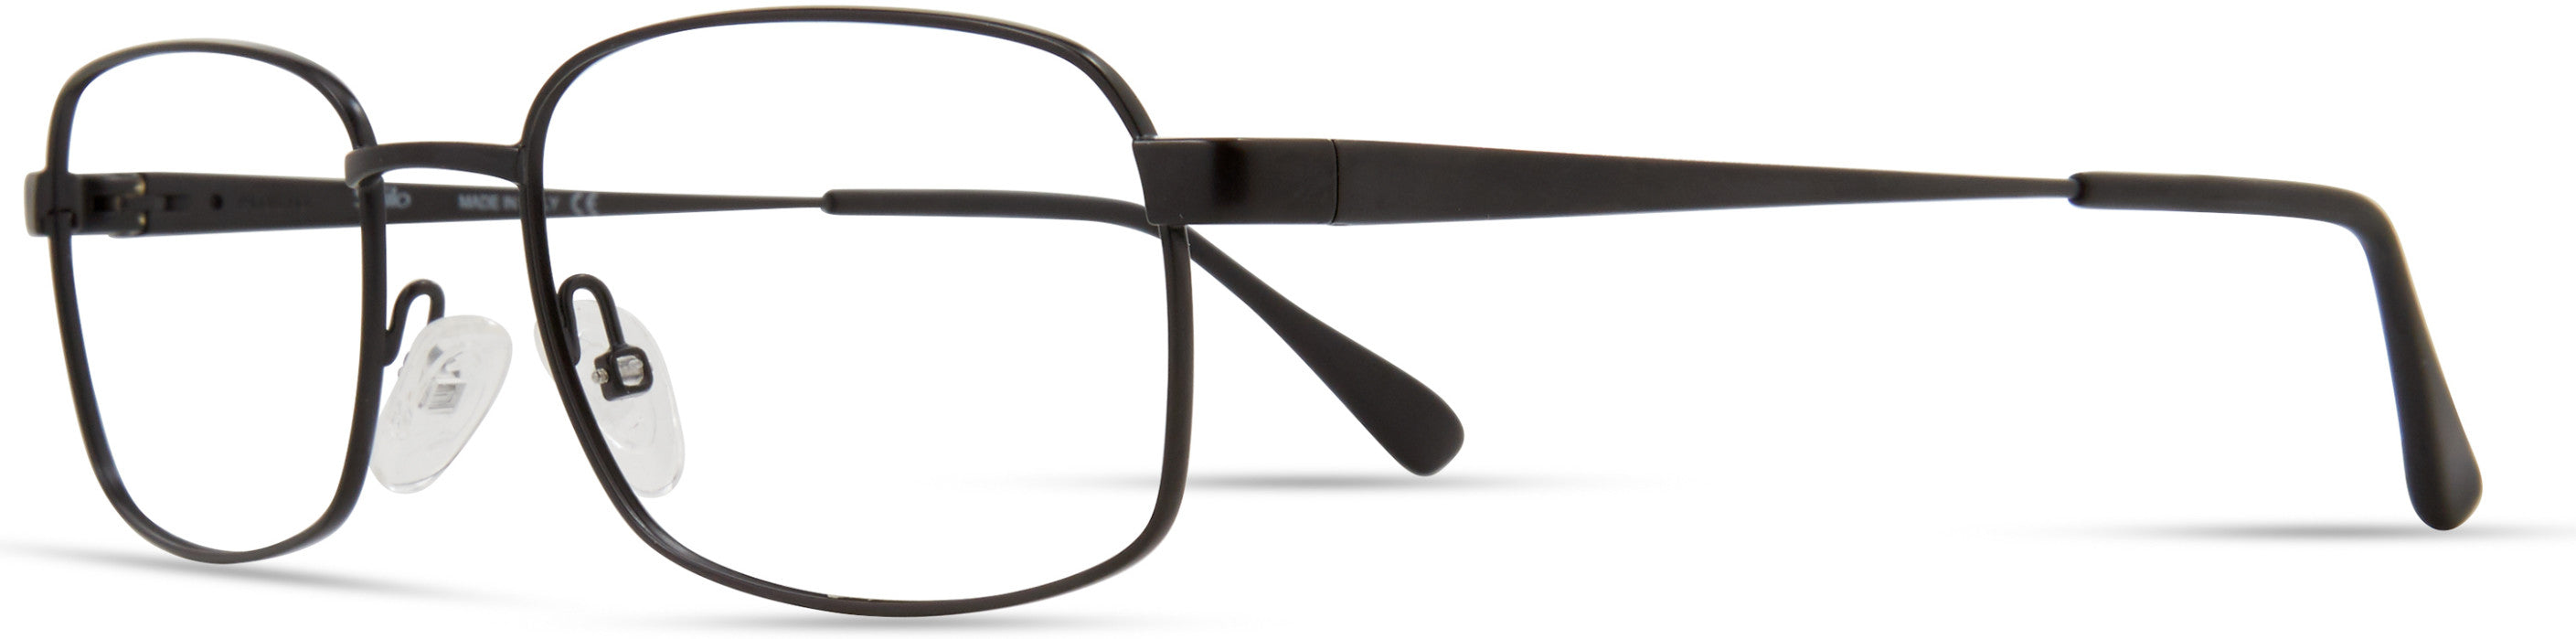  Elasta 7229 Rectangular Eyeglasses 0003-0003  Matte Black (00 Demo Lens)